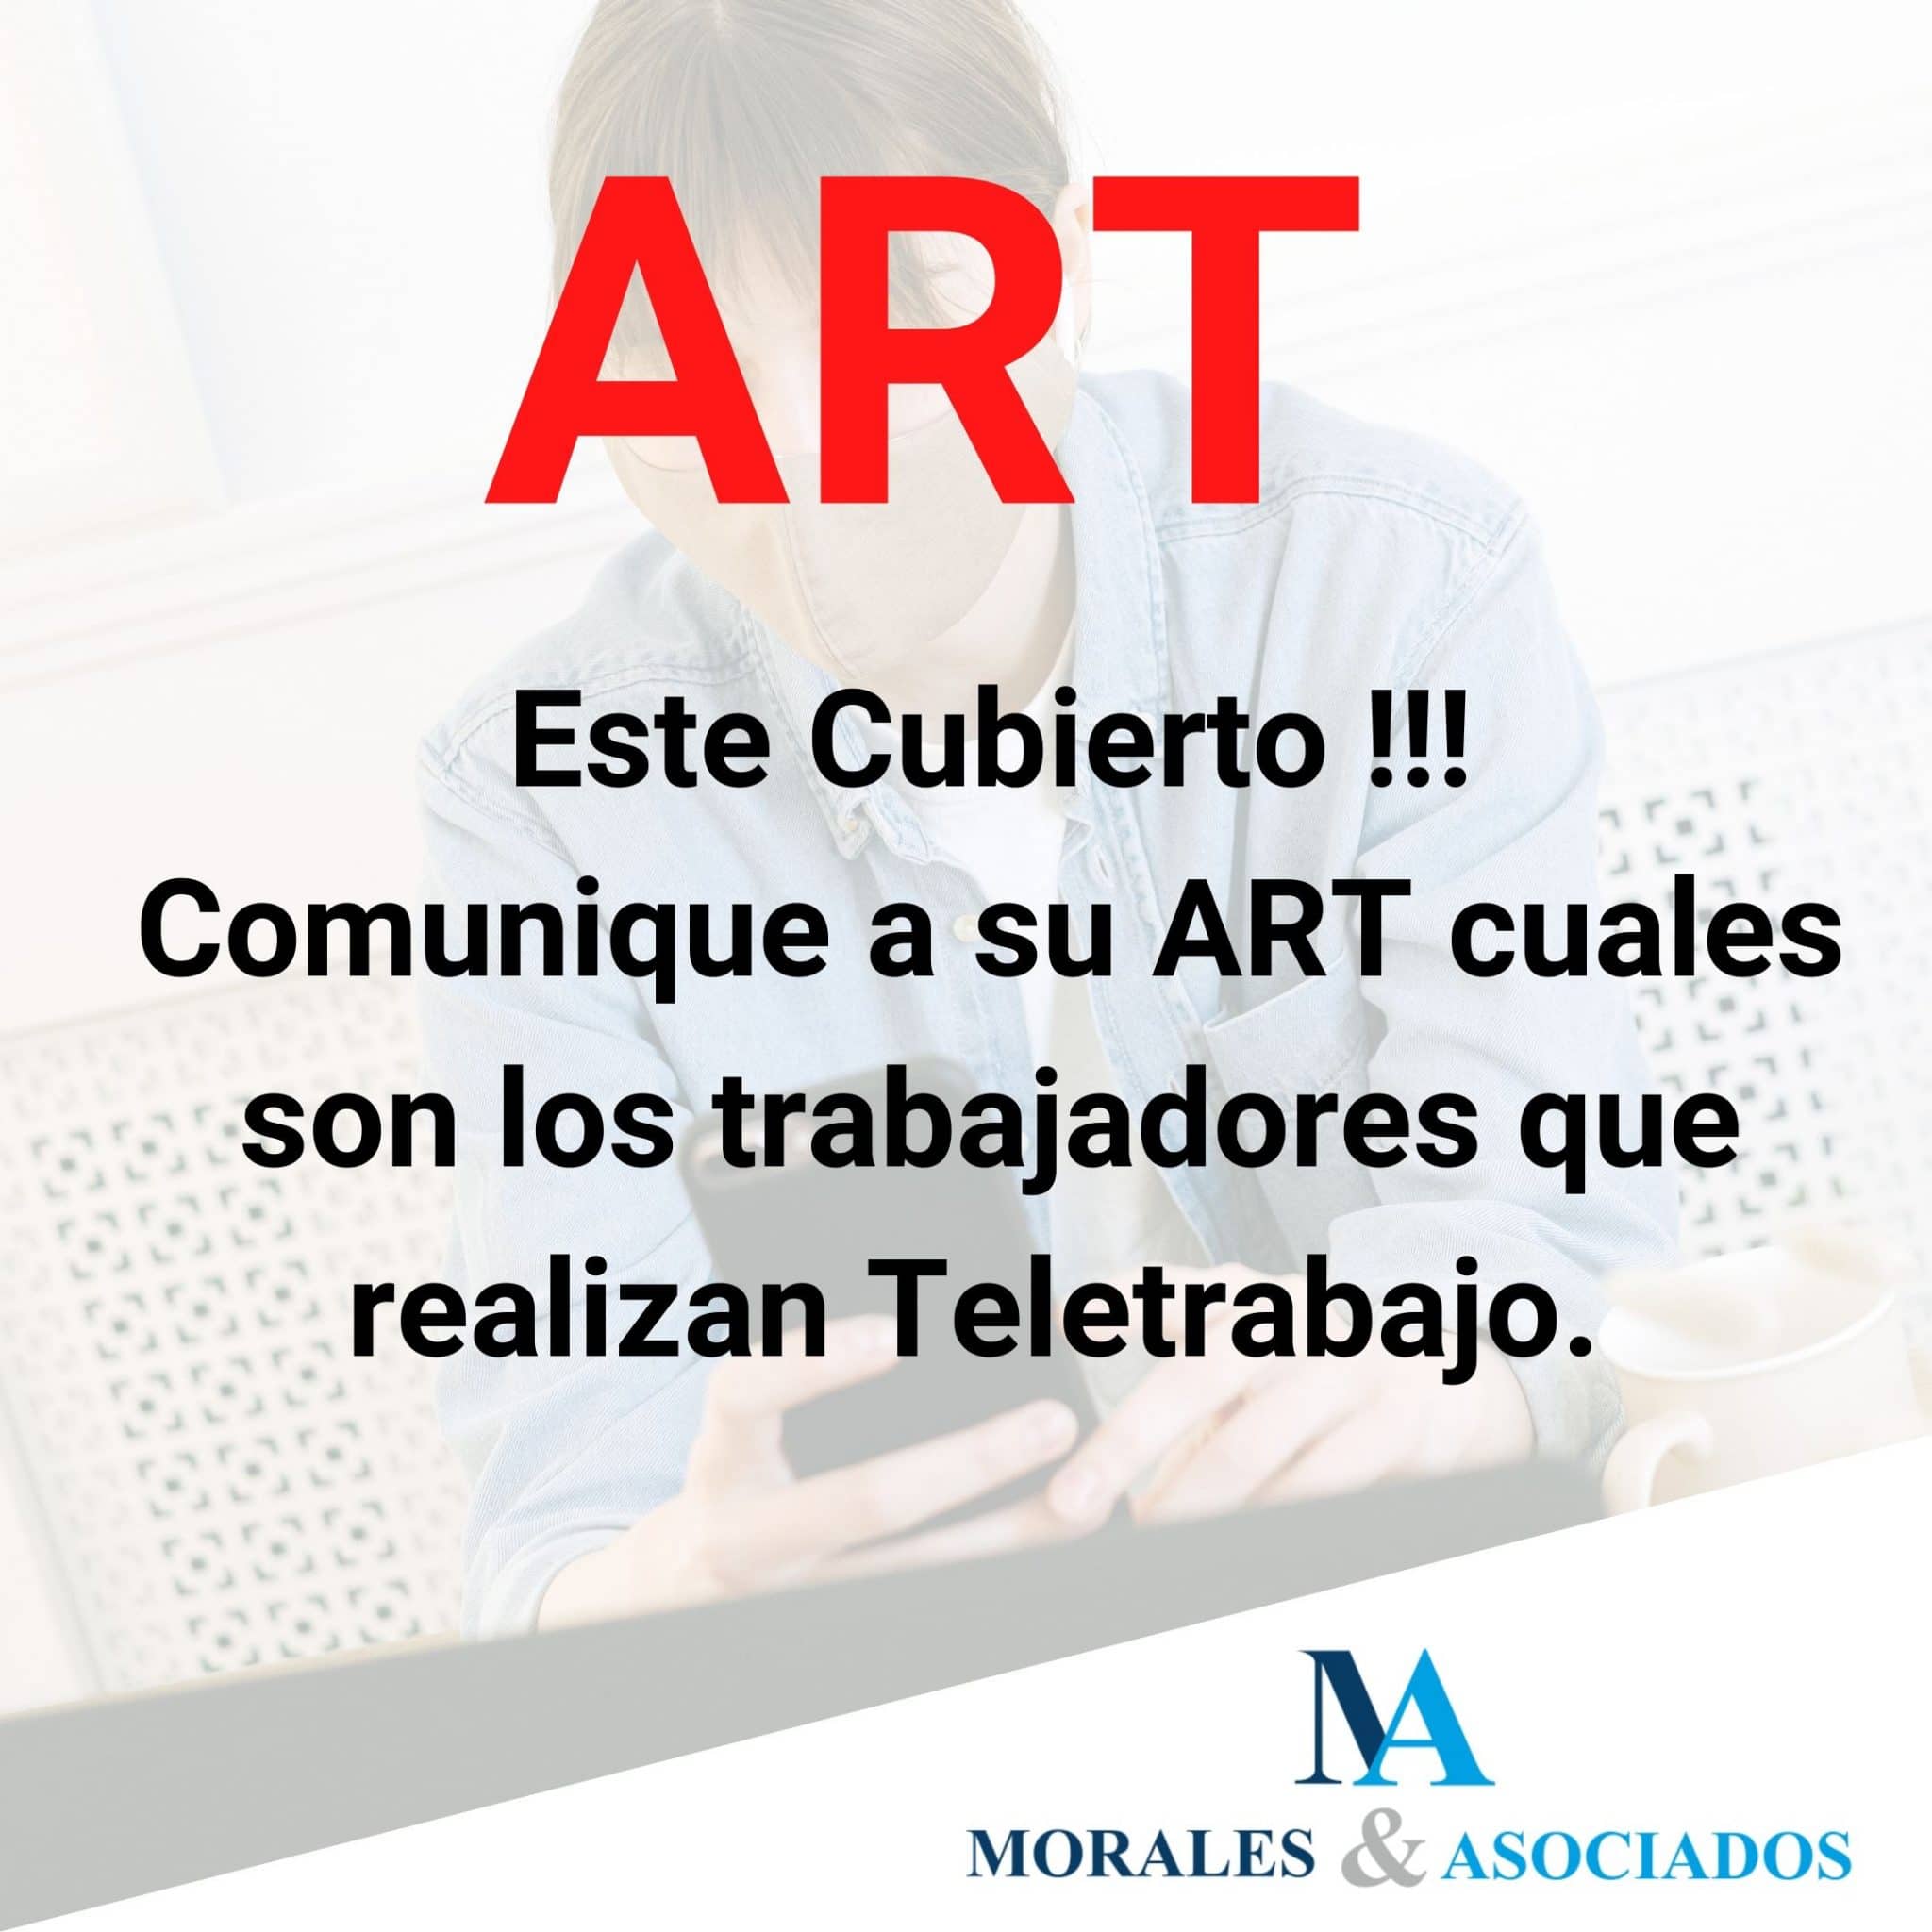 ART y el Teletrabajo